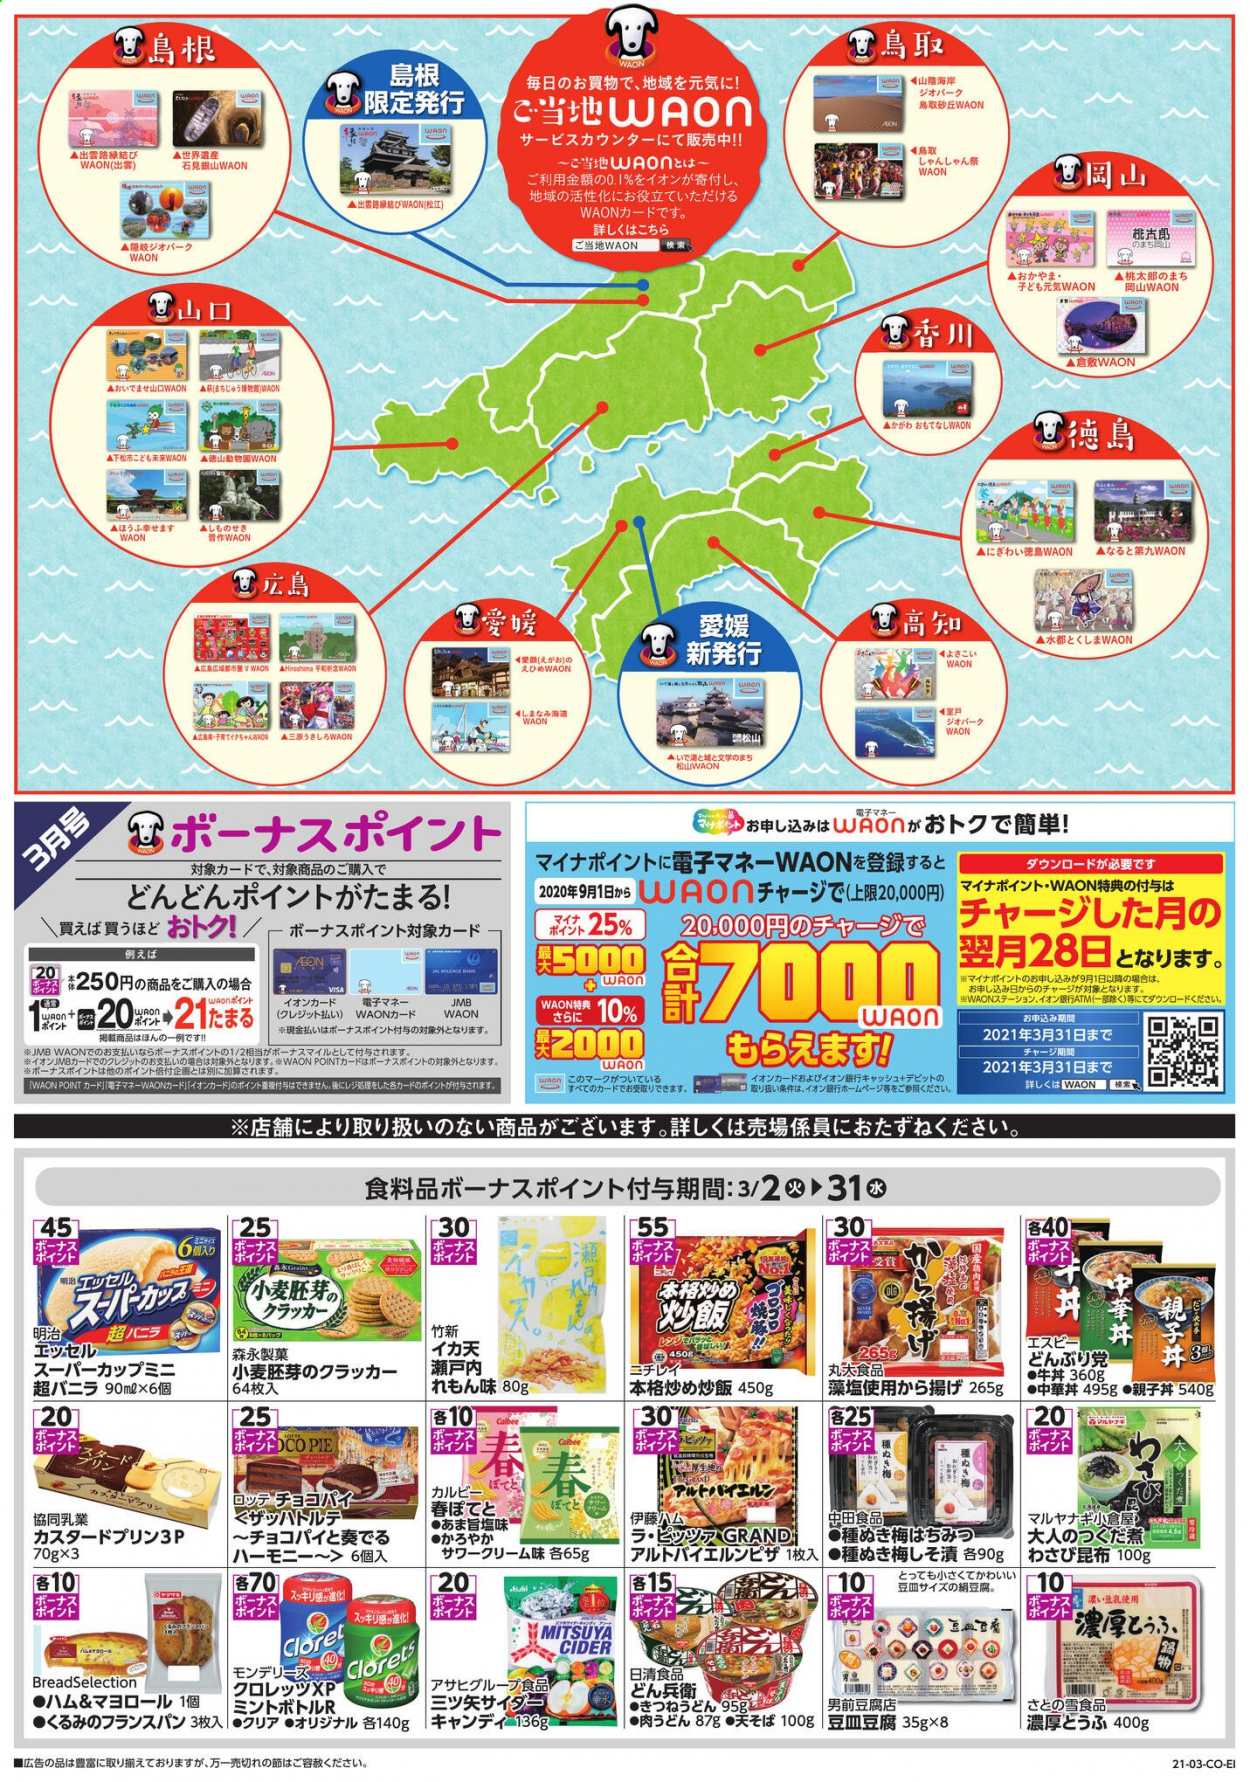 thumbnail - イオンチラシ - 2021年3月2日 - 2021年3月31日 - セール製品 - いか, いちご, きのこ, 絹豆腐, 豆腐。ページ1。